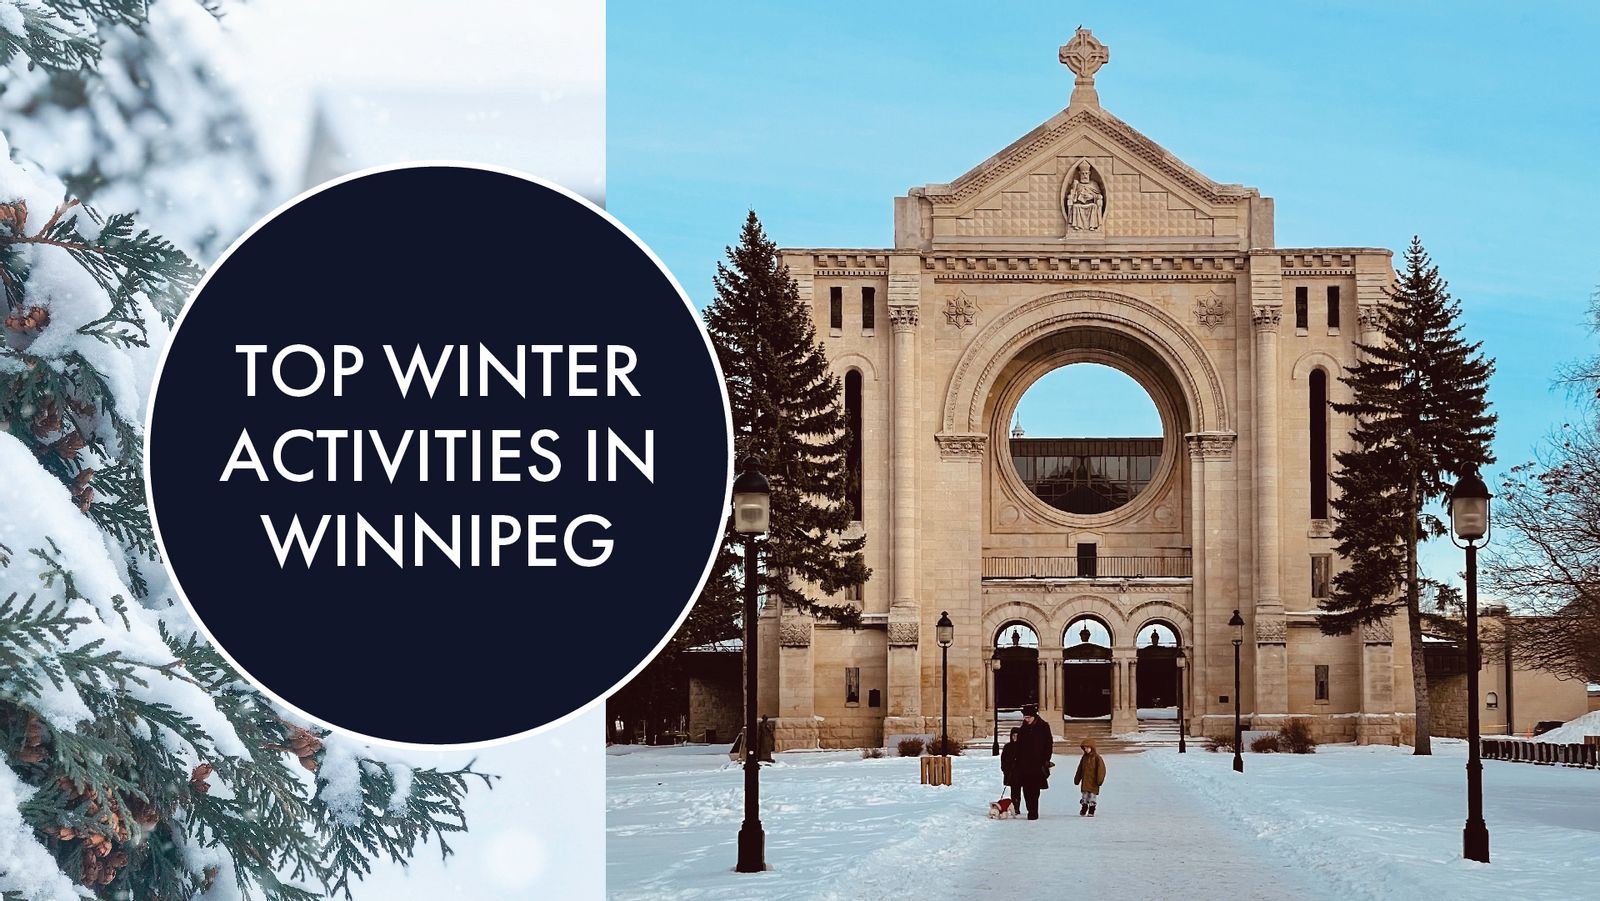 Top Winter Activities in Winnipeg